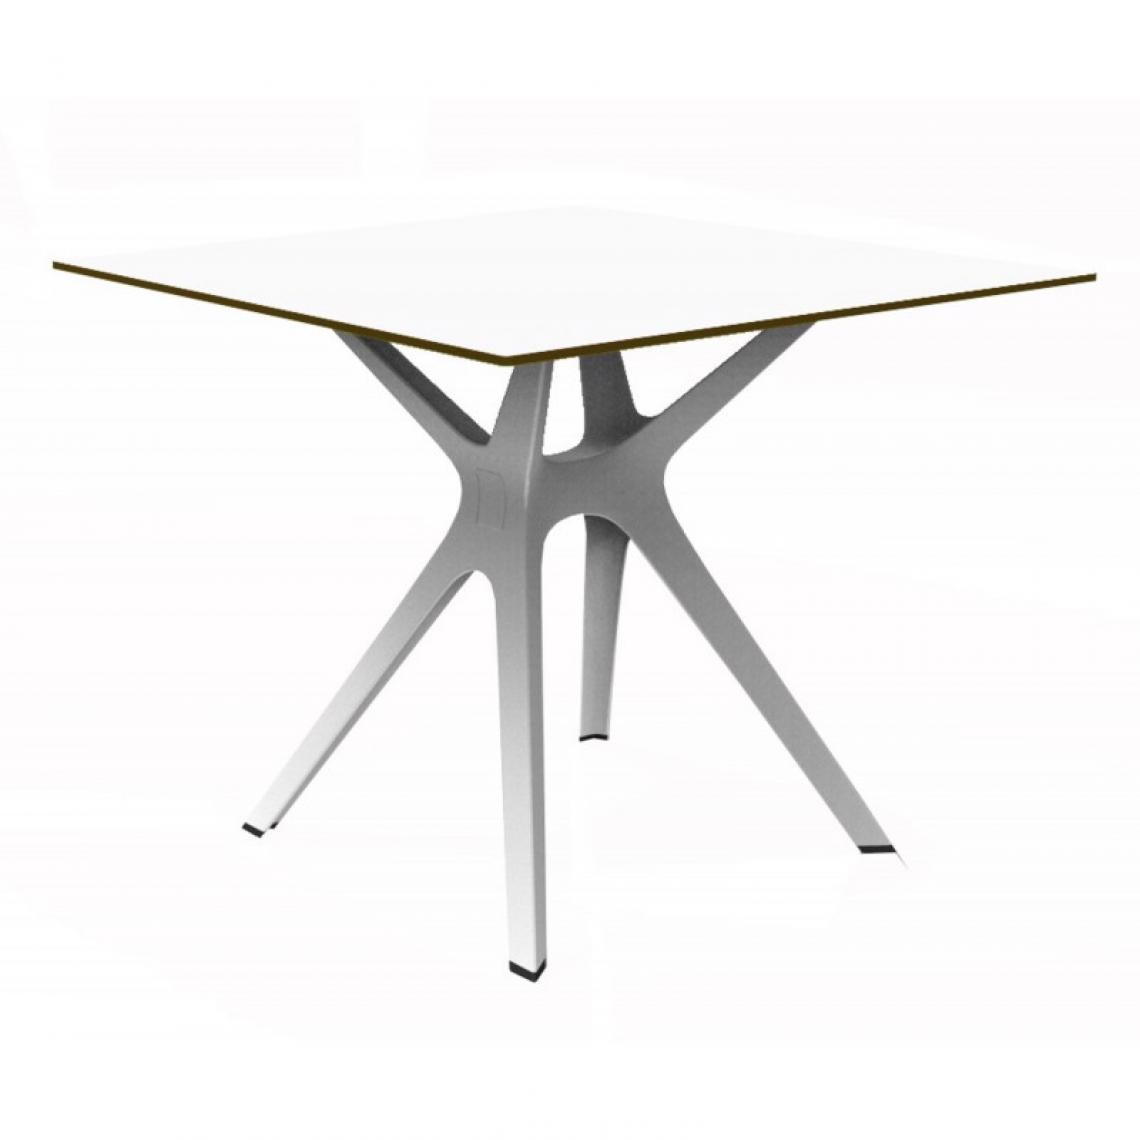 Resol - Table Phenolique 90x90 Pied De Table Vela "s" - Resol - Pied Blanc - Tableau BlancAluminium, phénolique compact, fibre de verre, p - Tables à manger